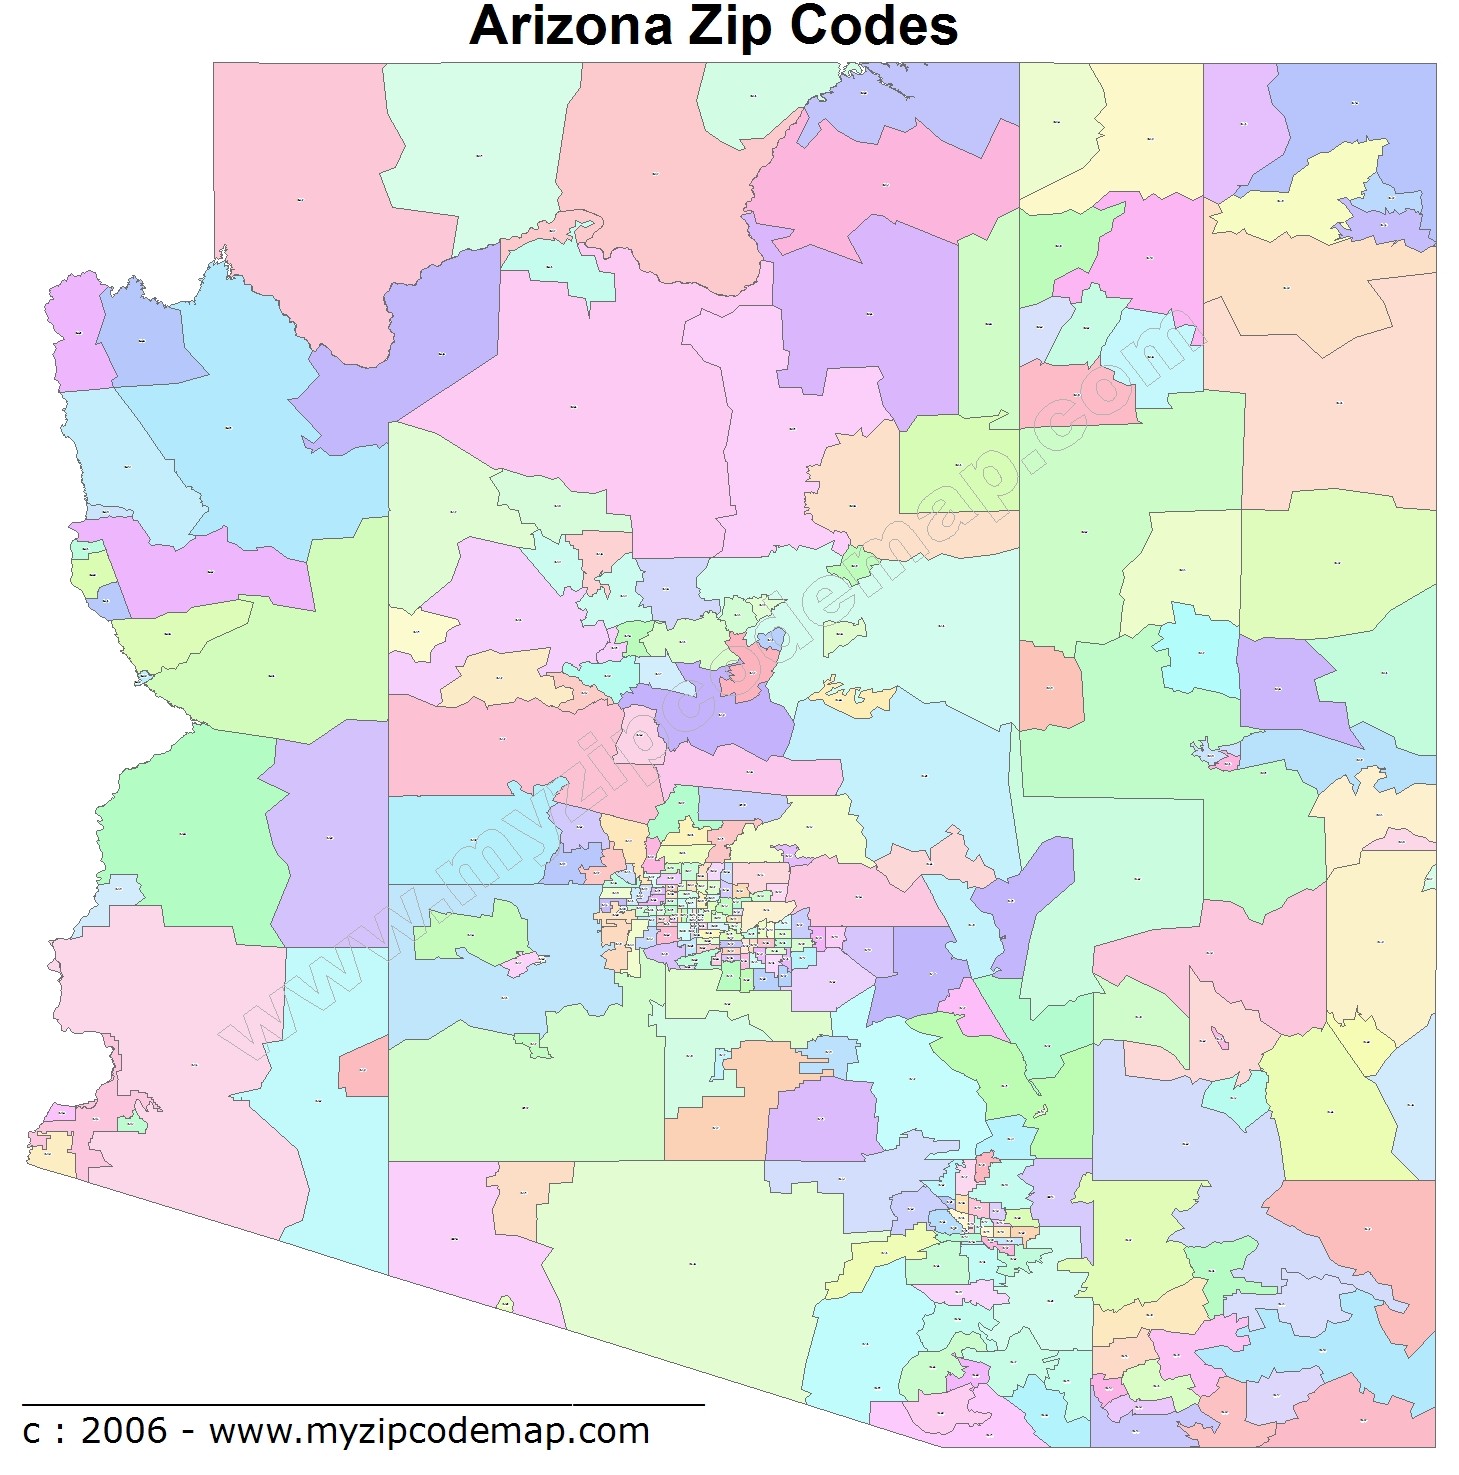 Arizona Zip Code Maps Free Arizona Zip Code Maps 1020